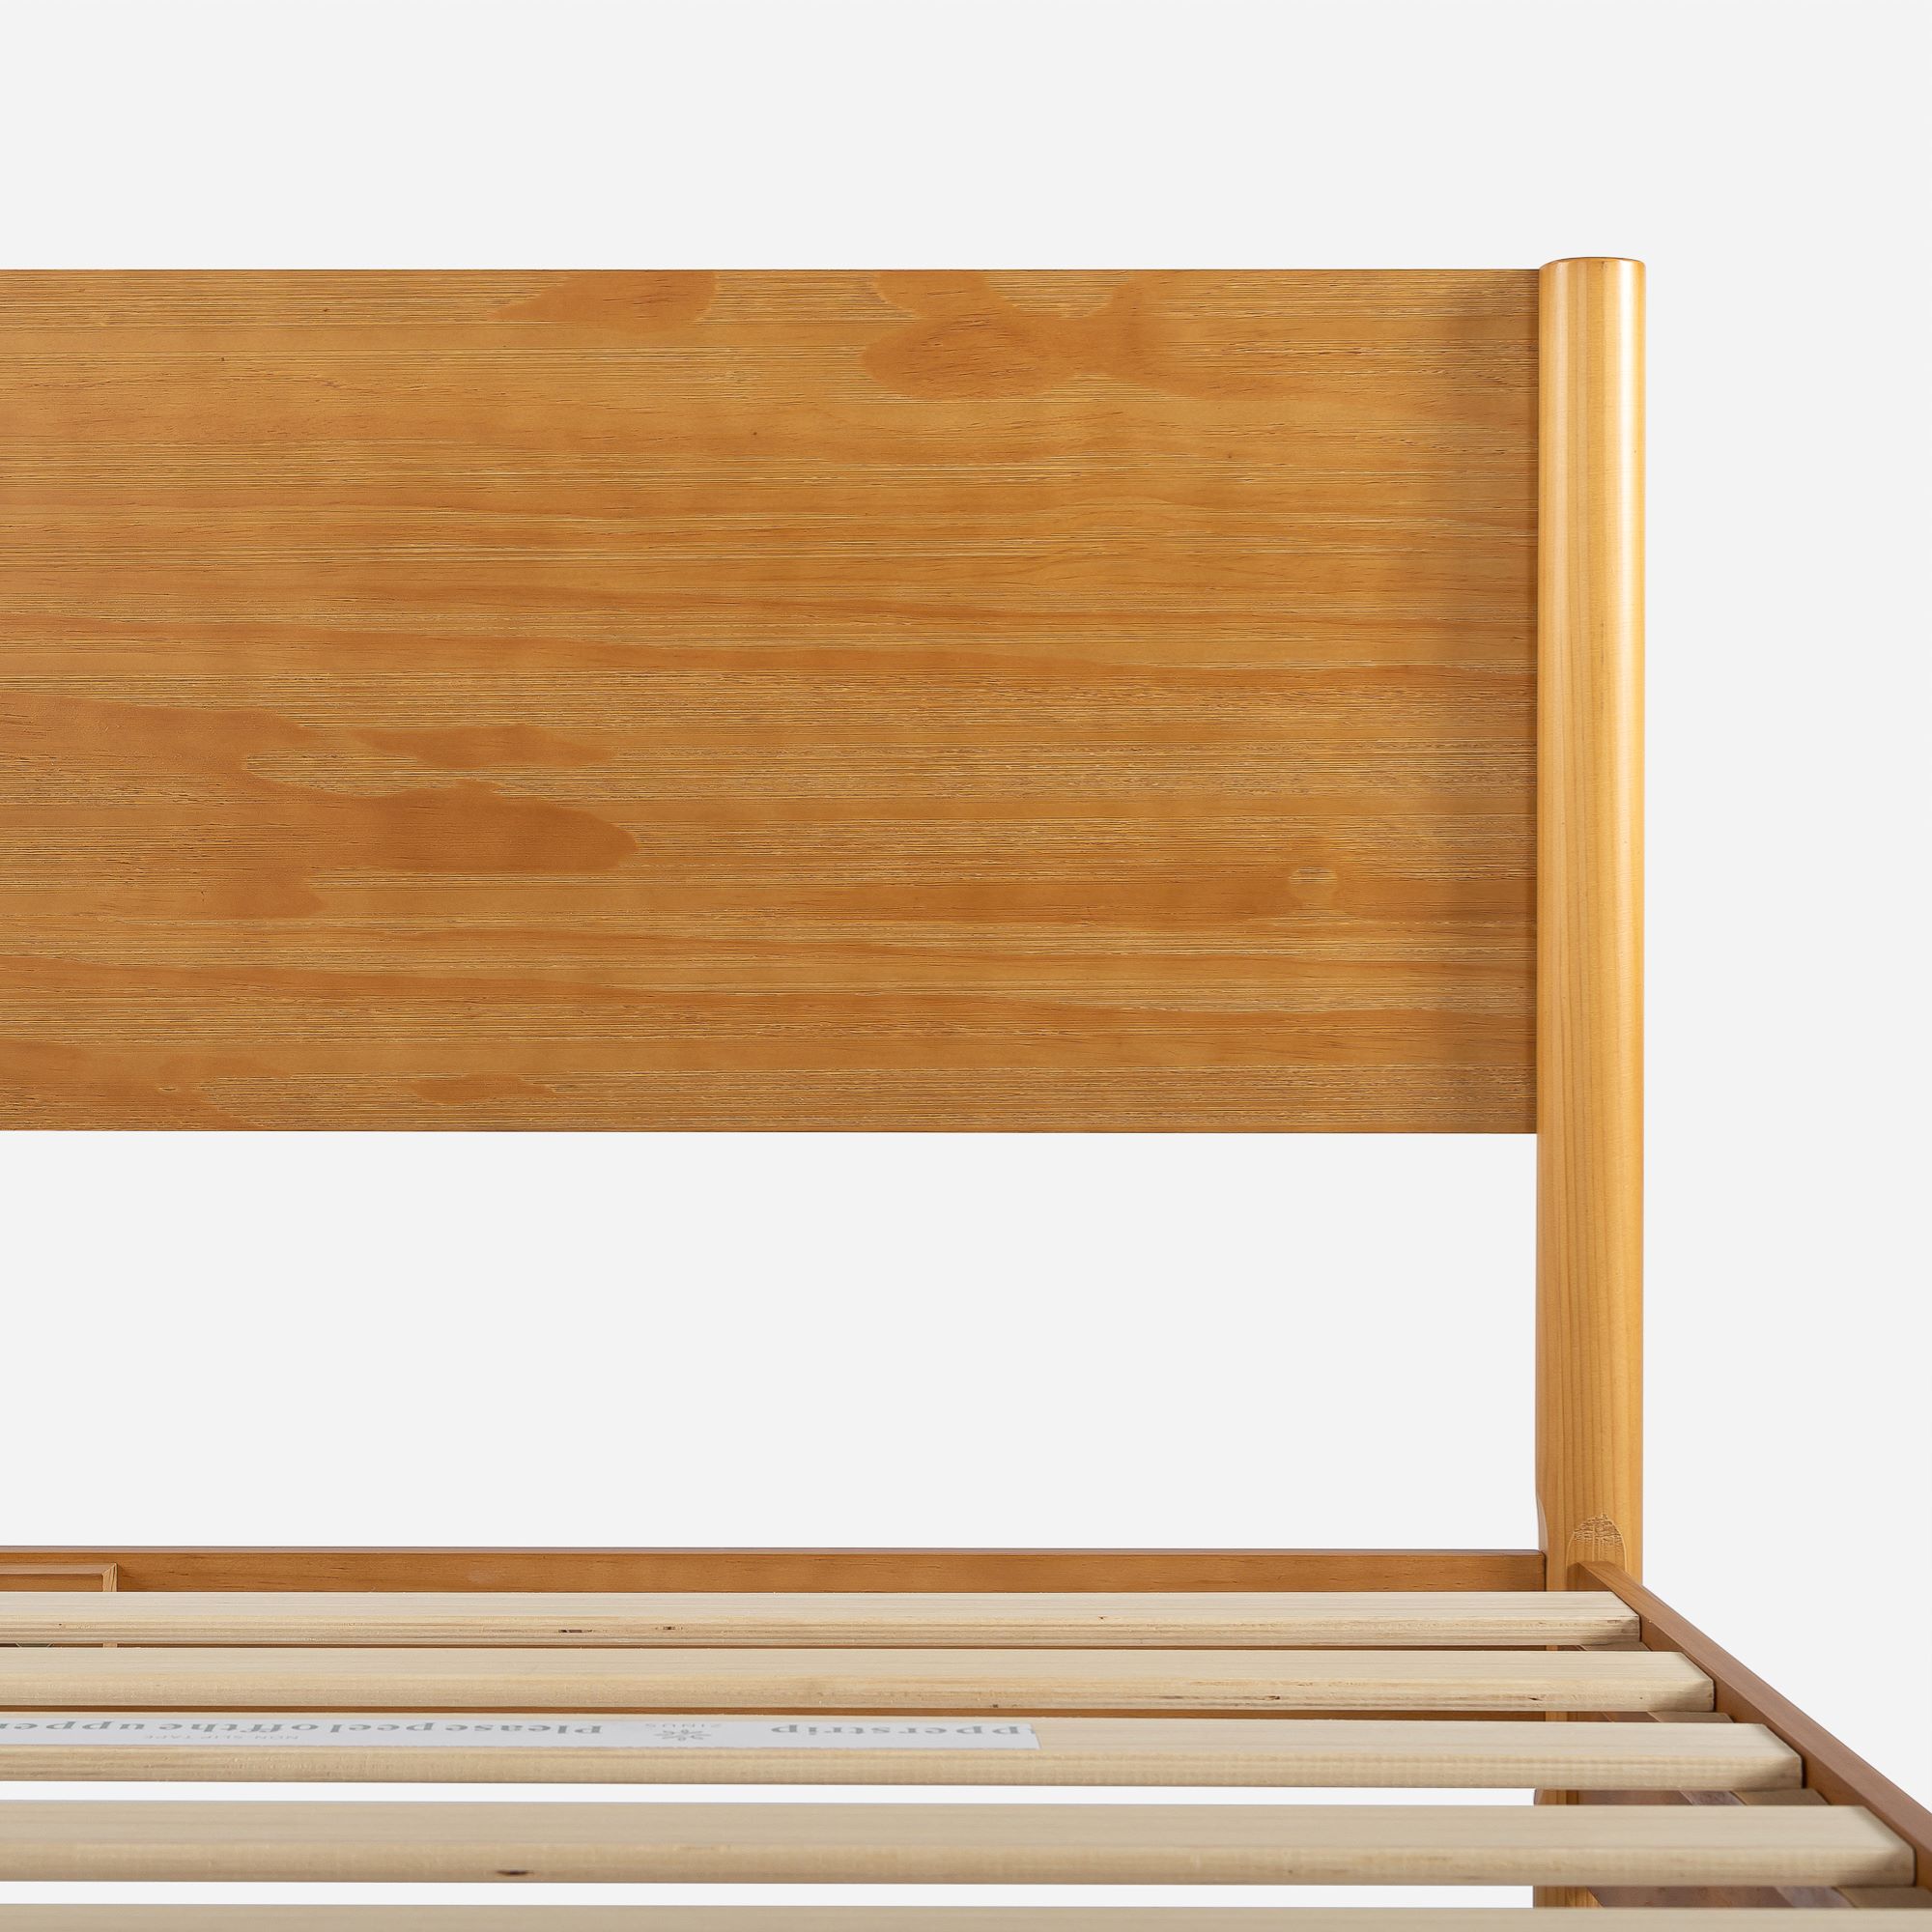 Zinus Allen 35" Mid Century Wood Platform Bed Frame, Queen - image 4 of 13